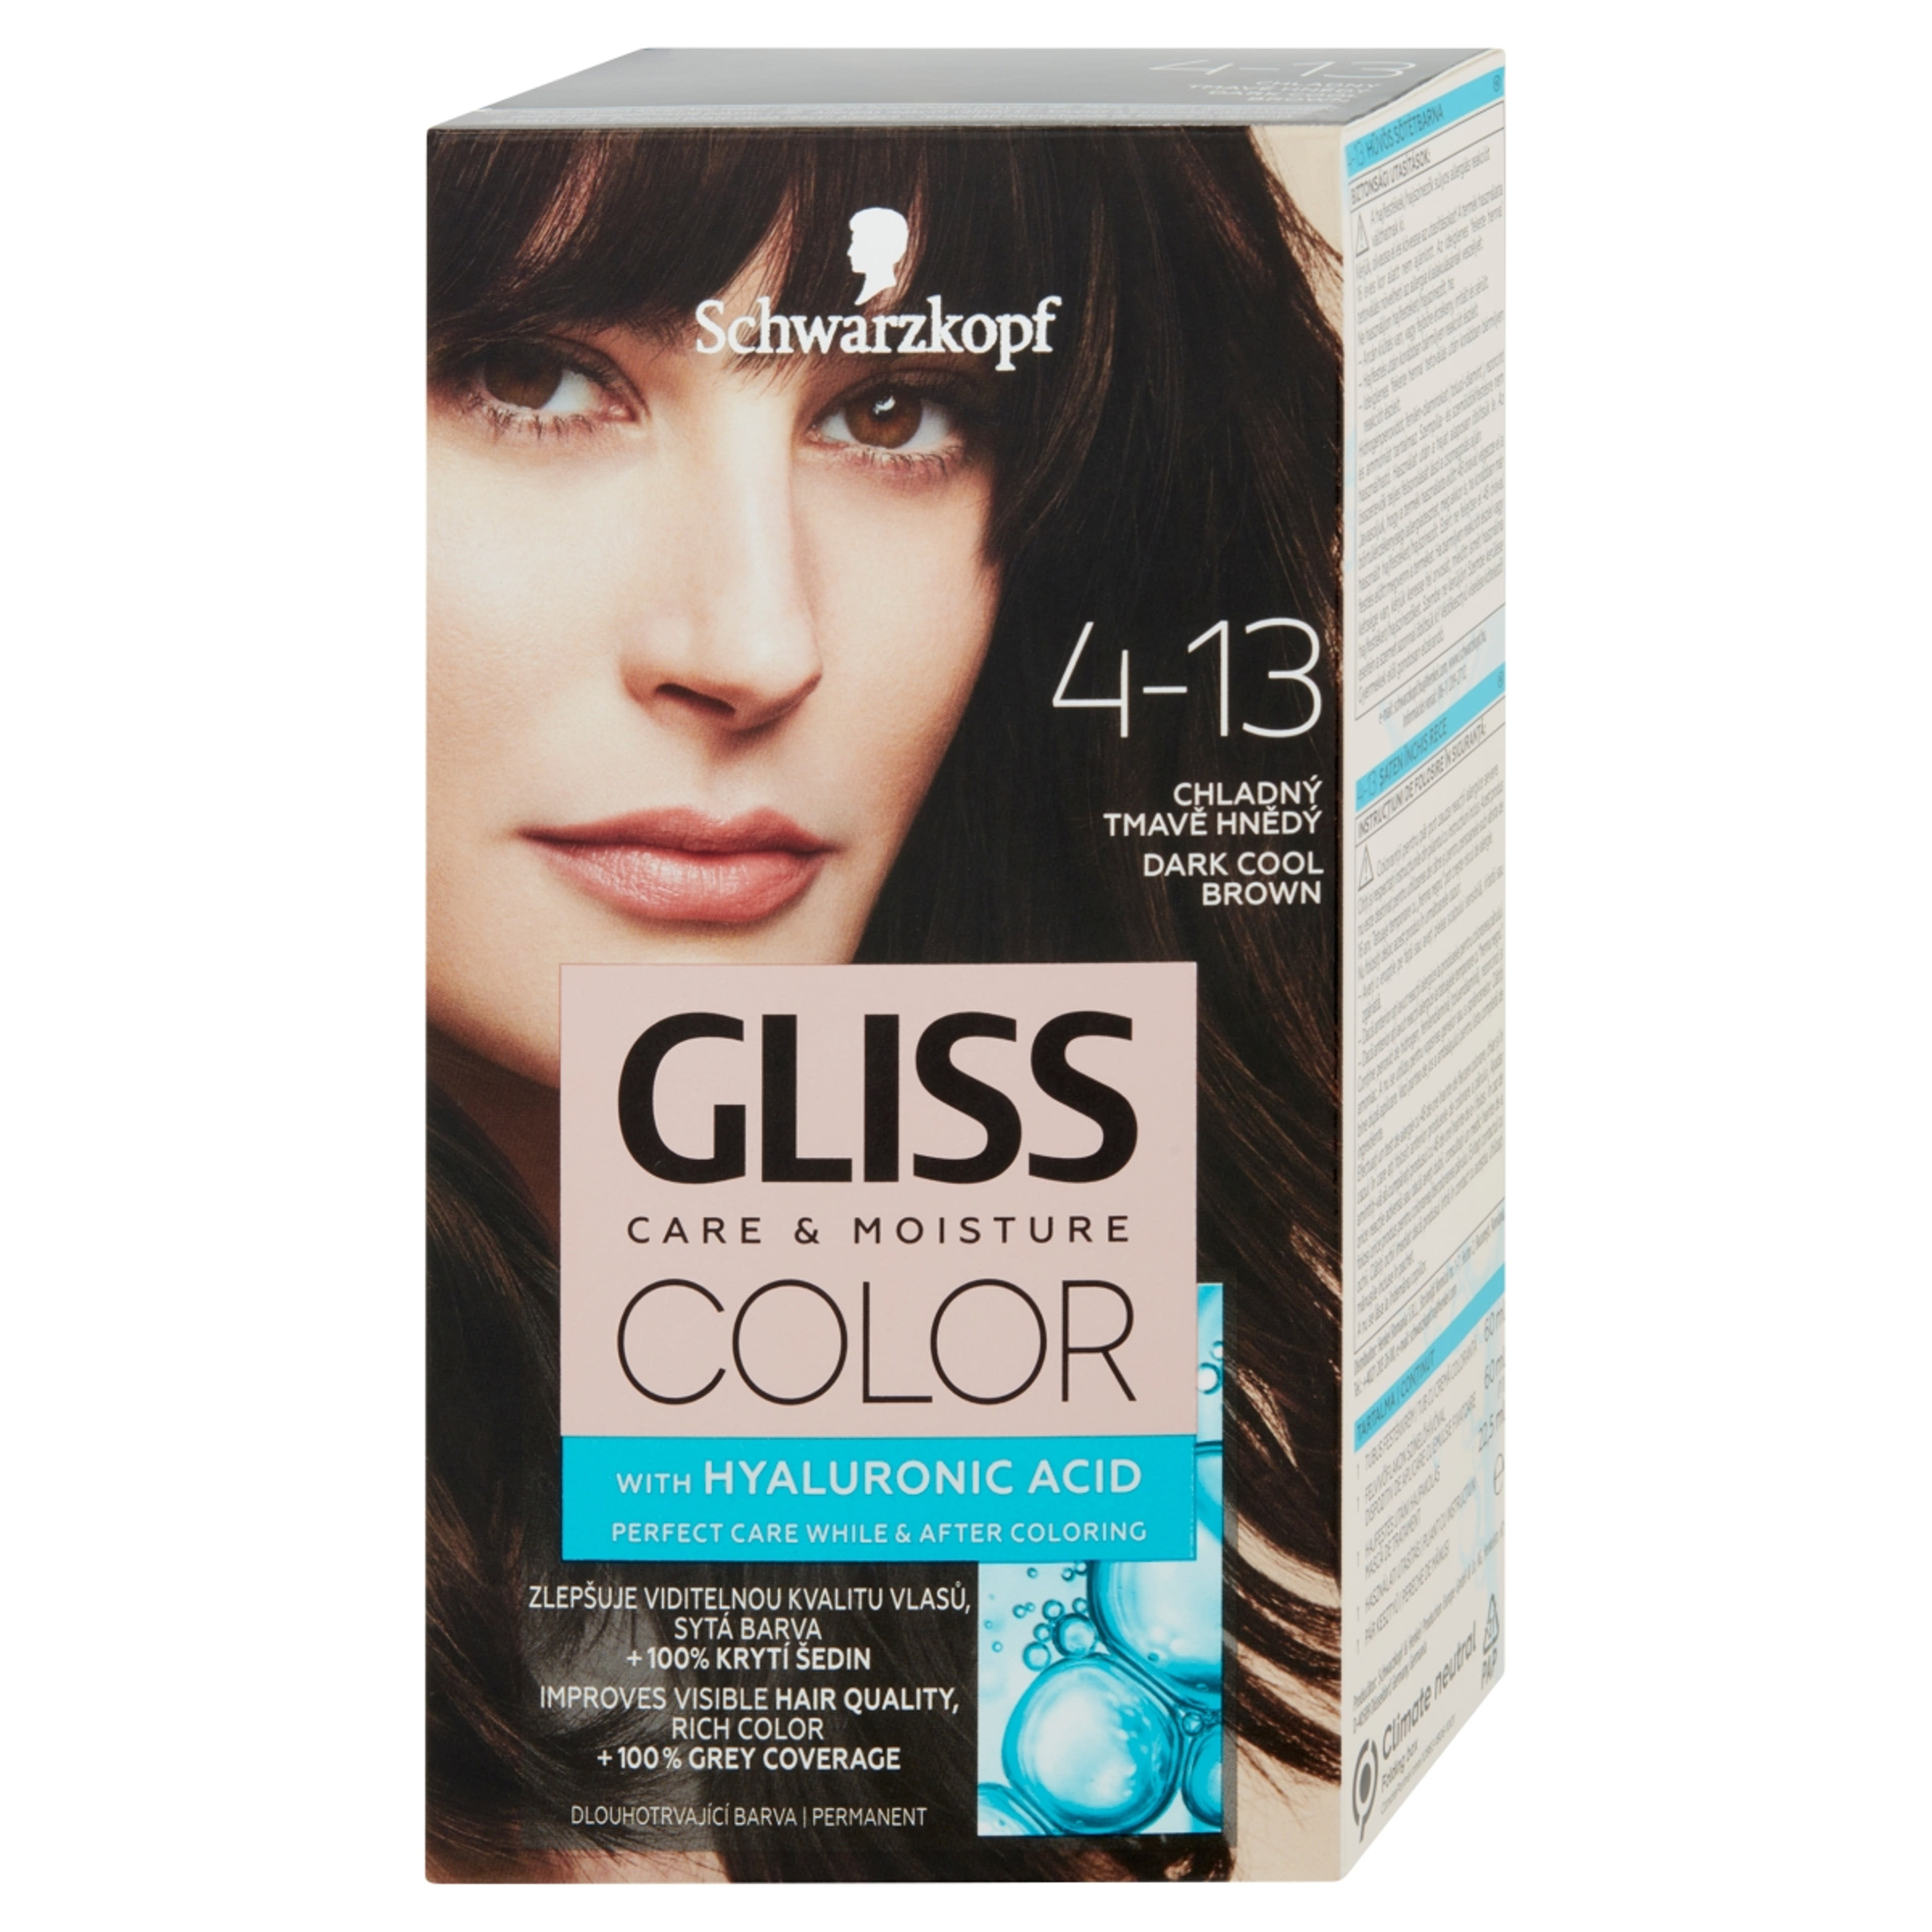 Gliss Color tartós hajfesték 4-13 Hűvös sötétbarna - 1 db-2